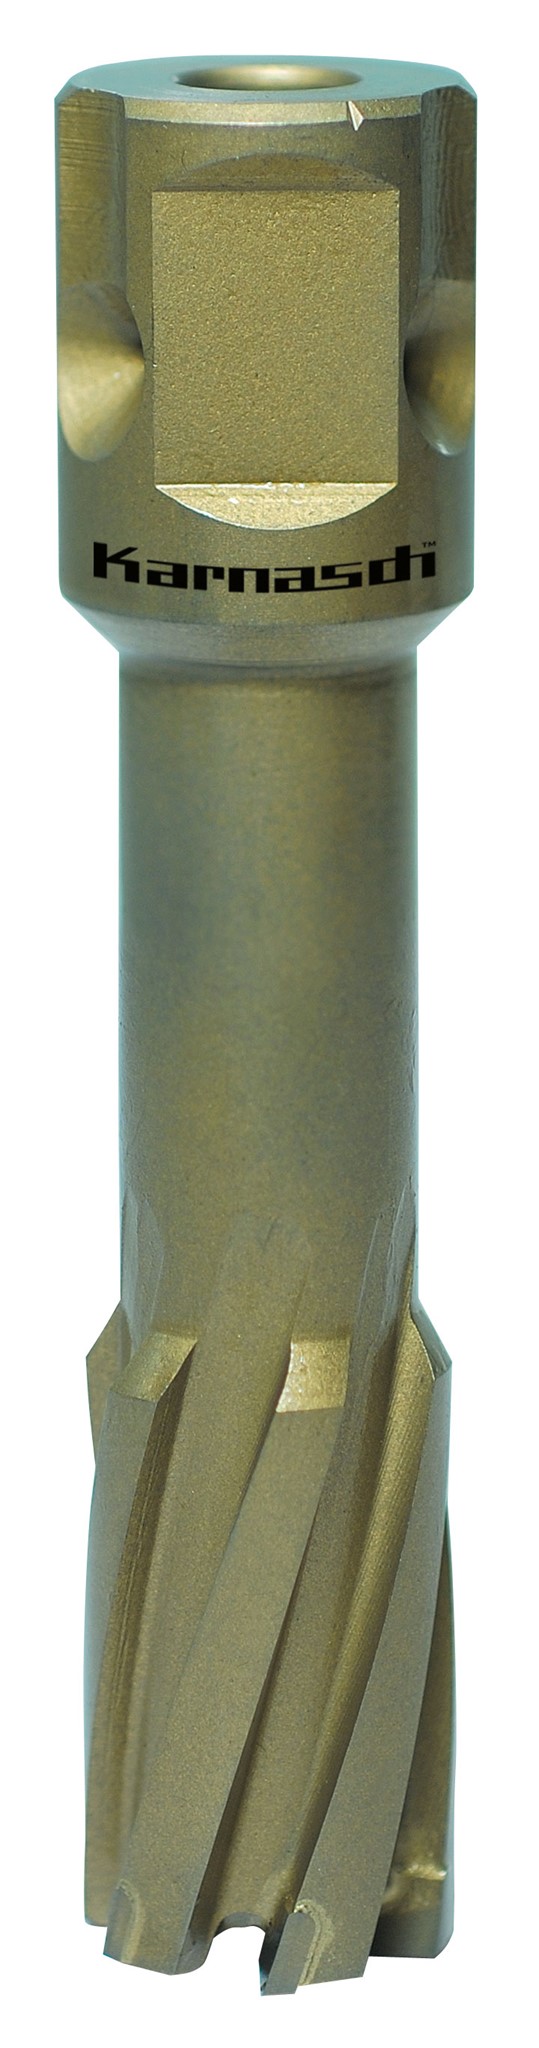 Bild von Kernbohrer Metallkraft HARD-LINE 55 Universal Ø 34 mm